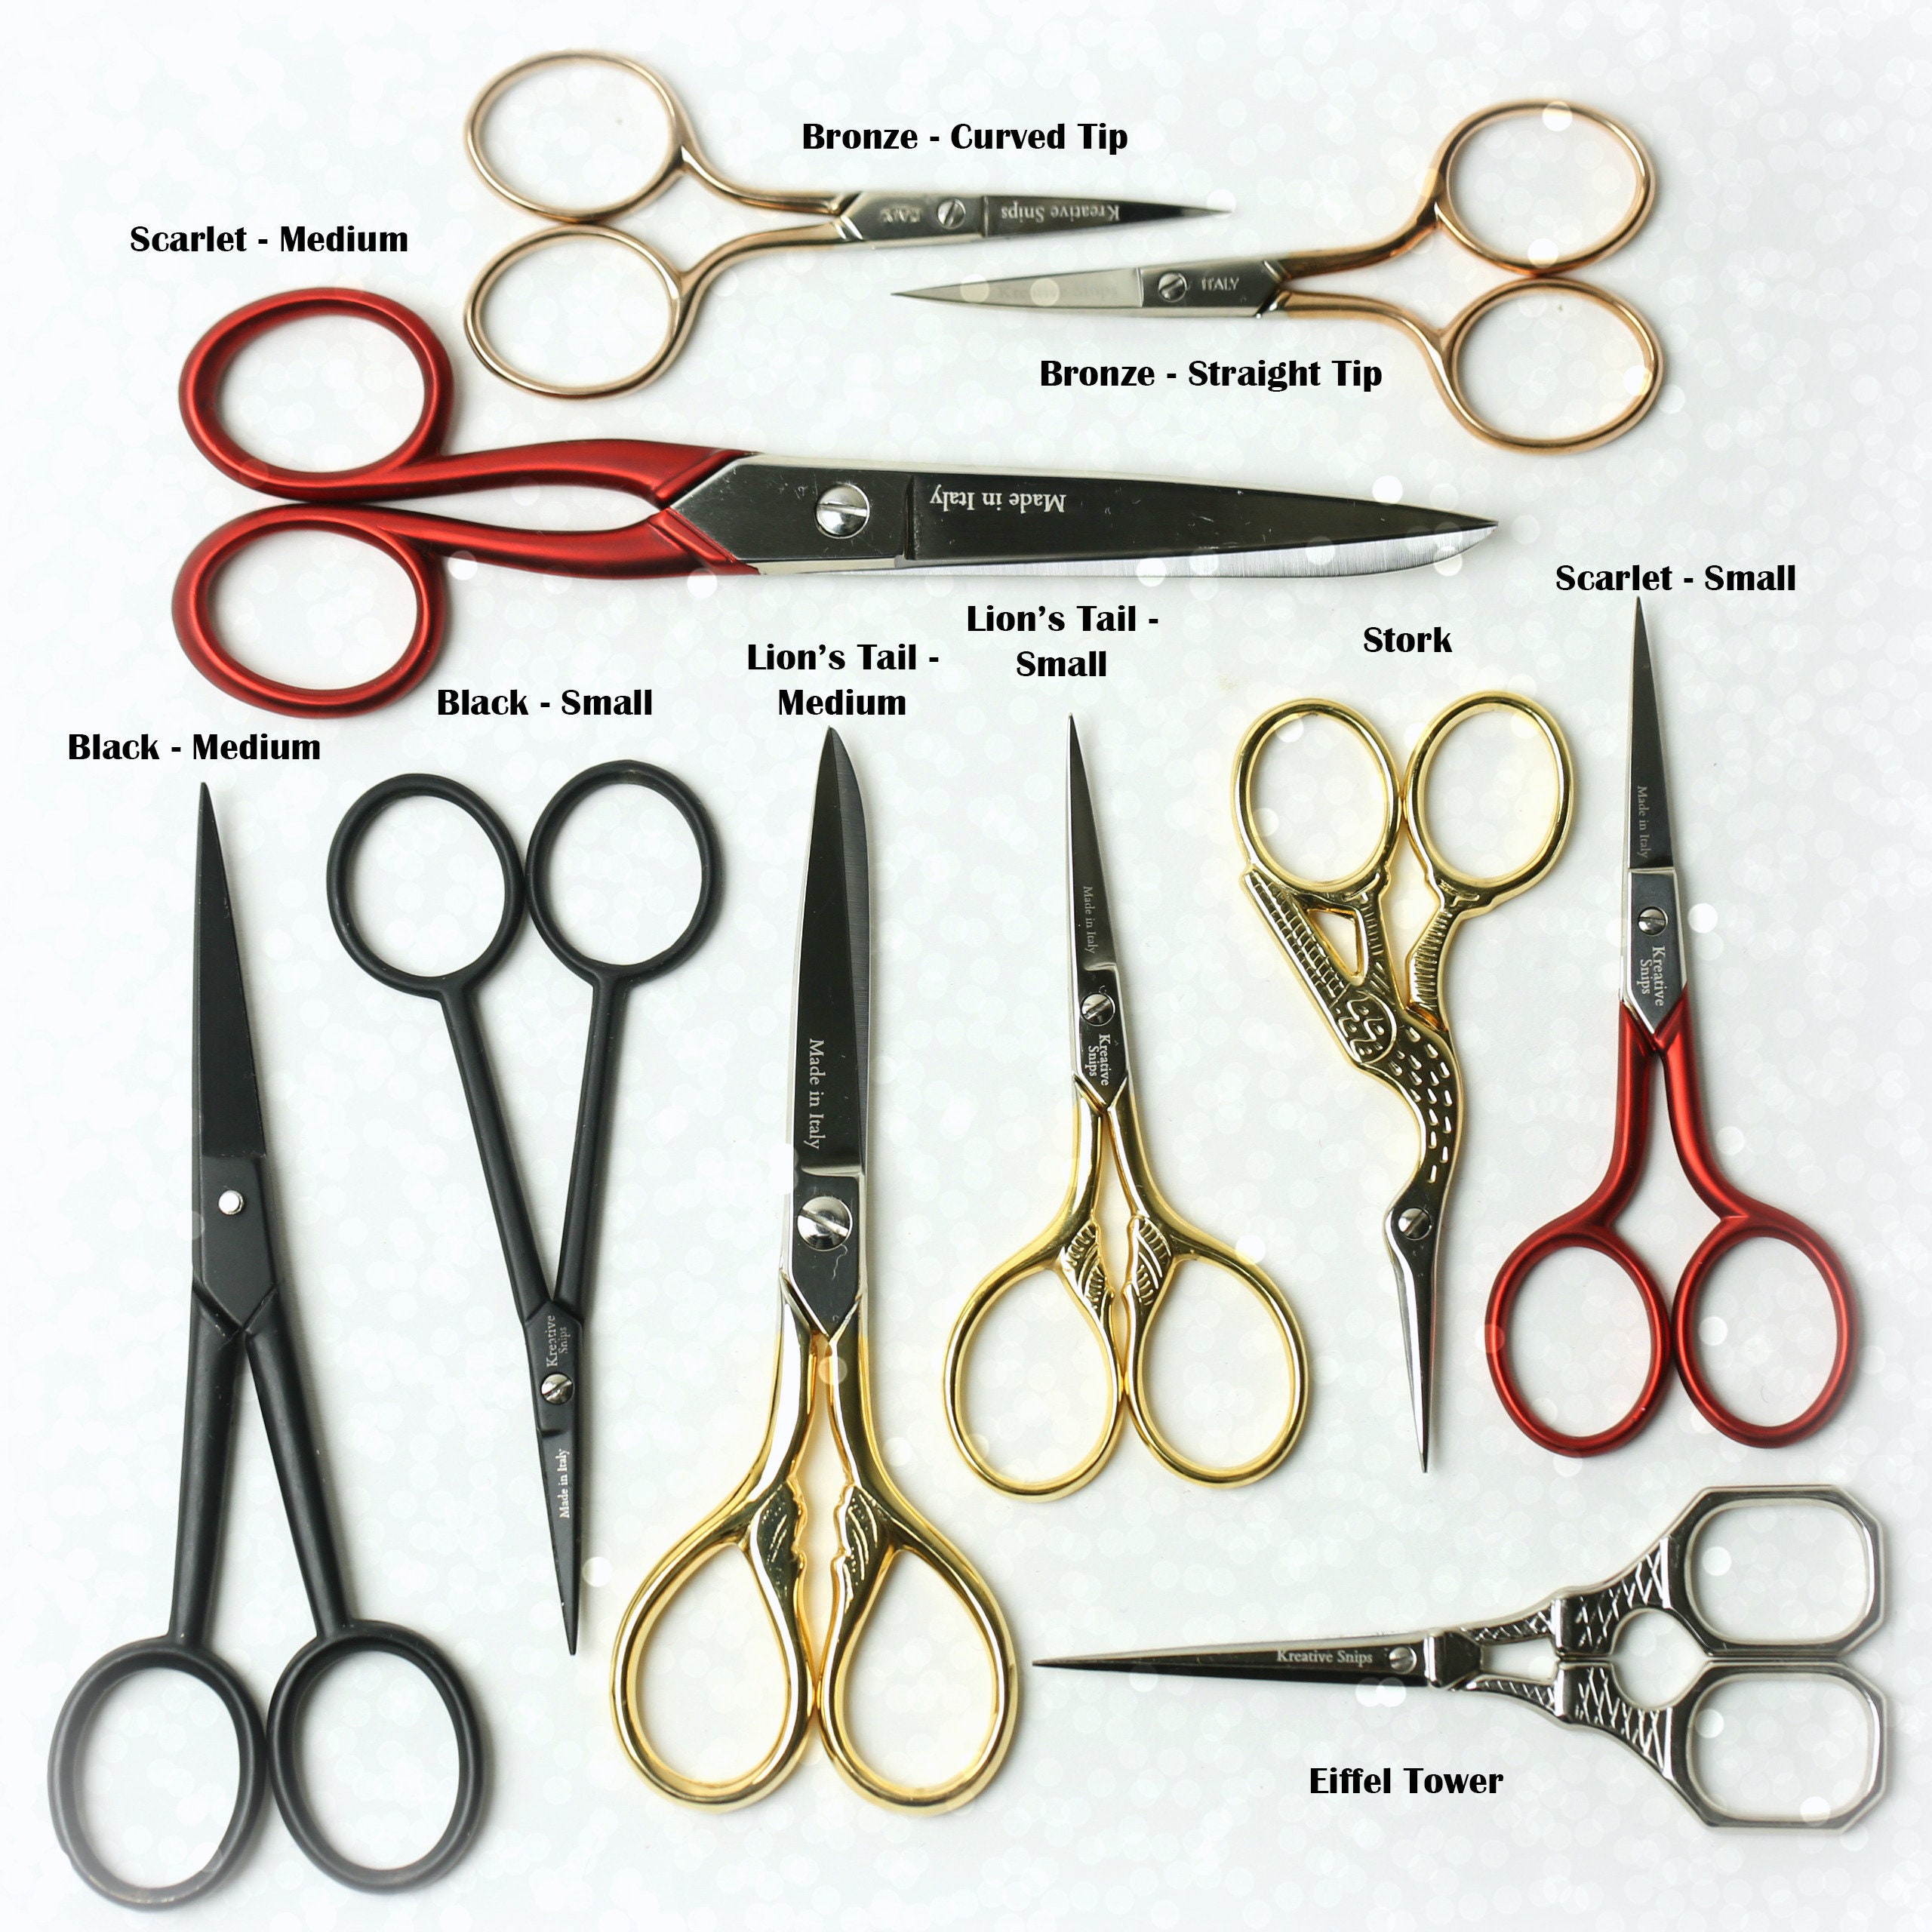 Stork Manicure Scissors \ Diane \ sNails Nails